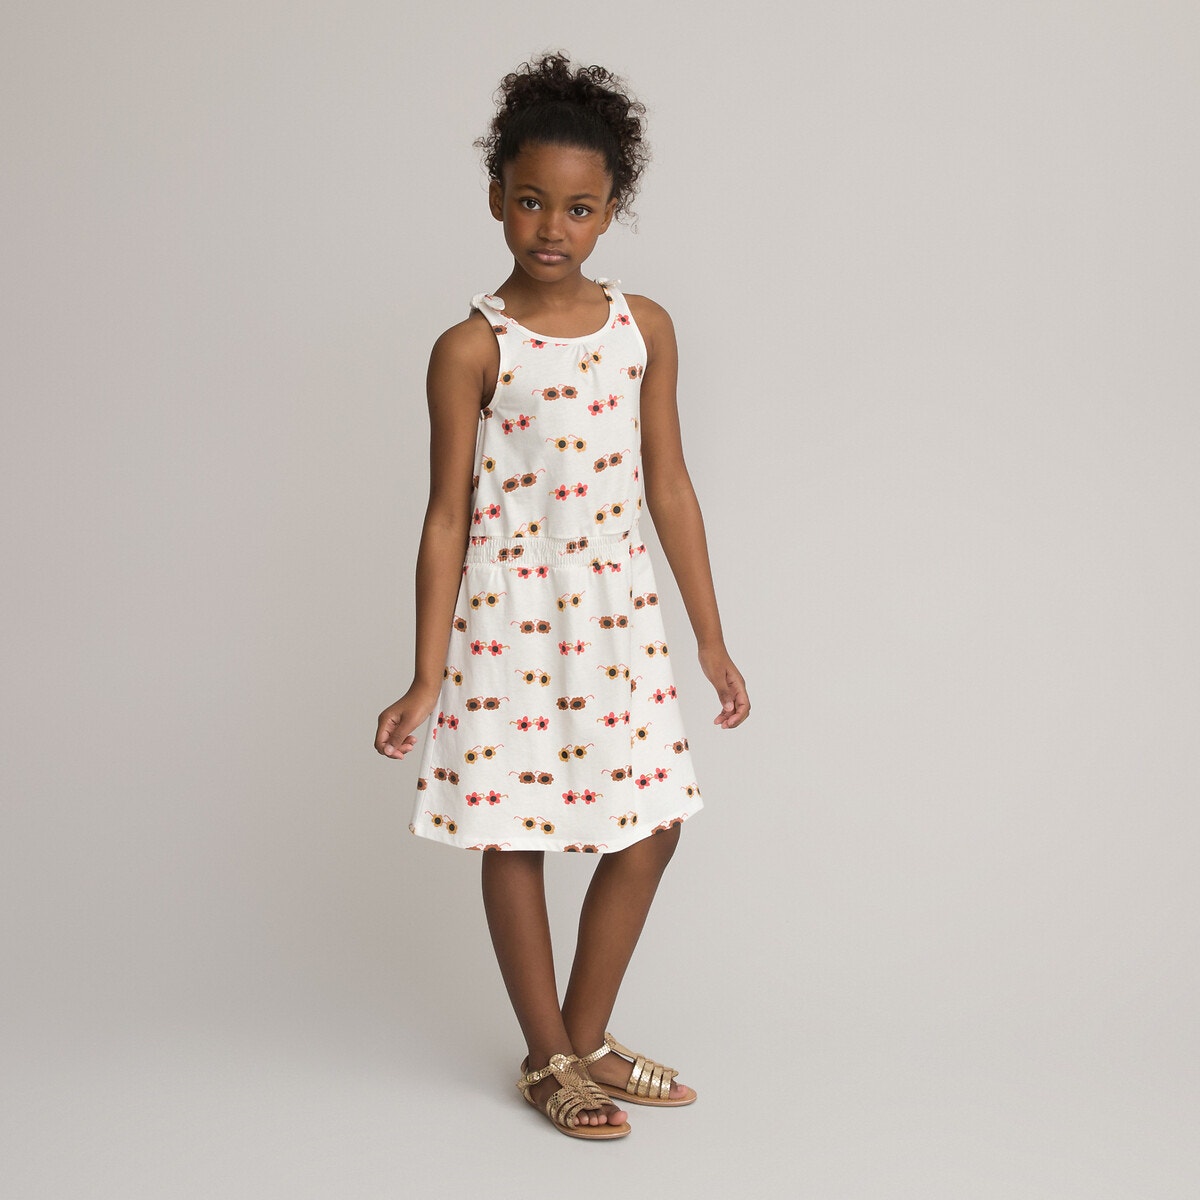 ΠΑΙΔΙ | Φορέματα | Αμάνικα Αμάνικο εμπριμέ φόρεμα από οργανικό βαμβάκι, 3-12 ετών